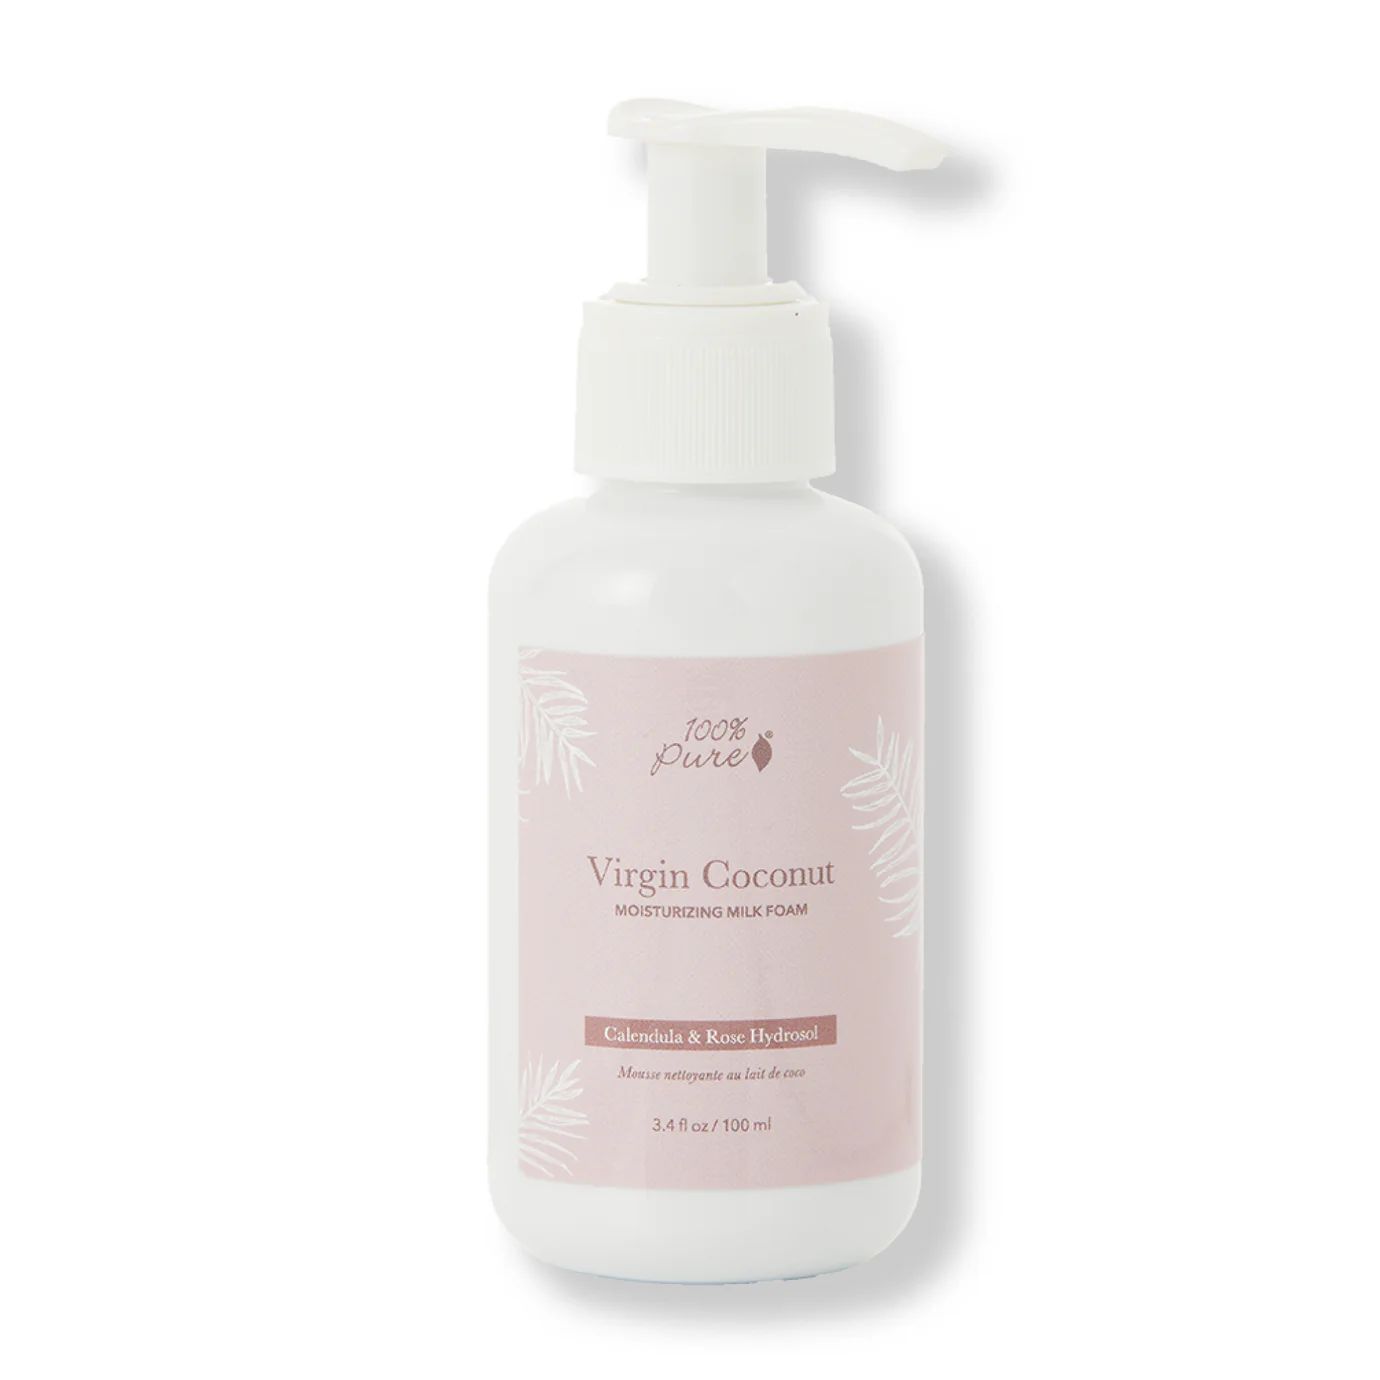 Virgin Coconut Moisturizing Milk Foam | 100% PURE